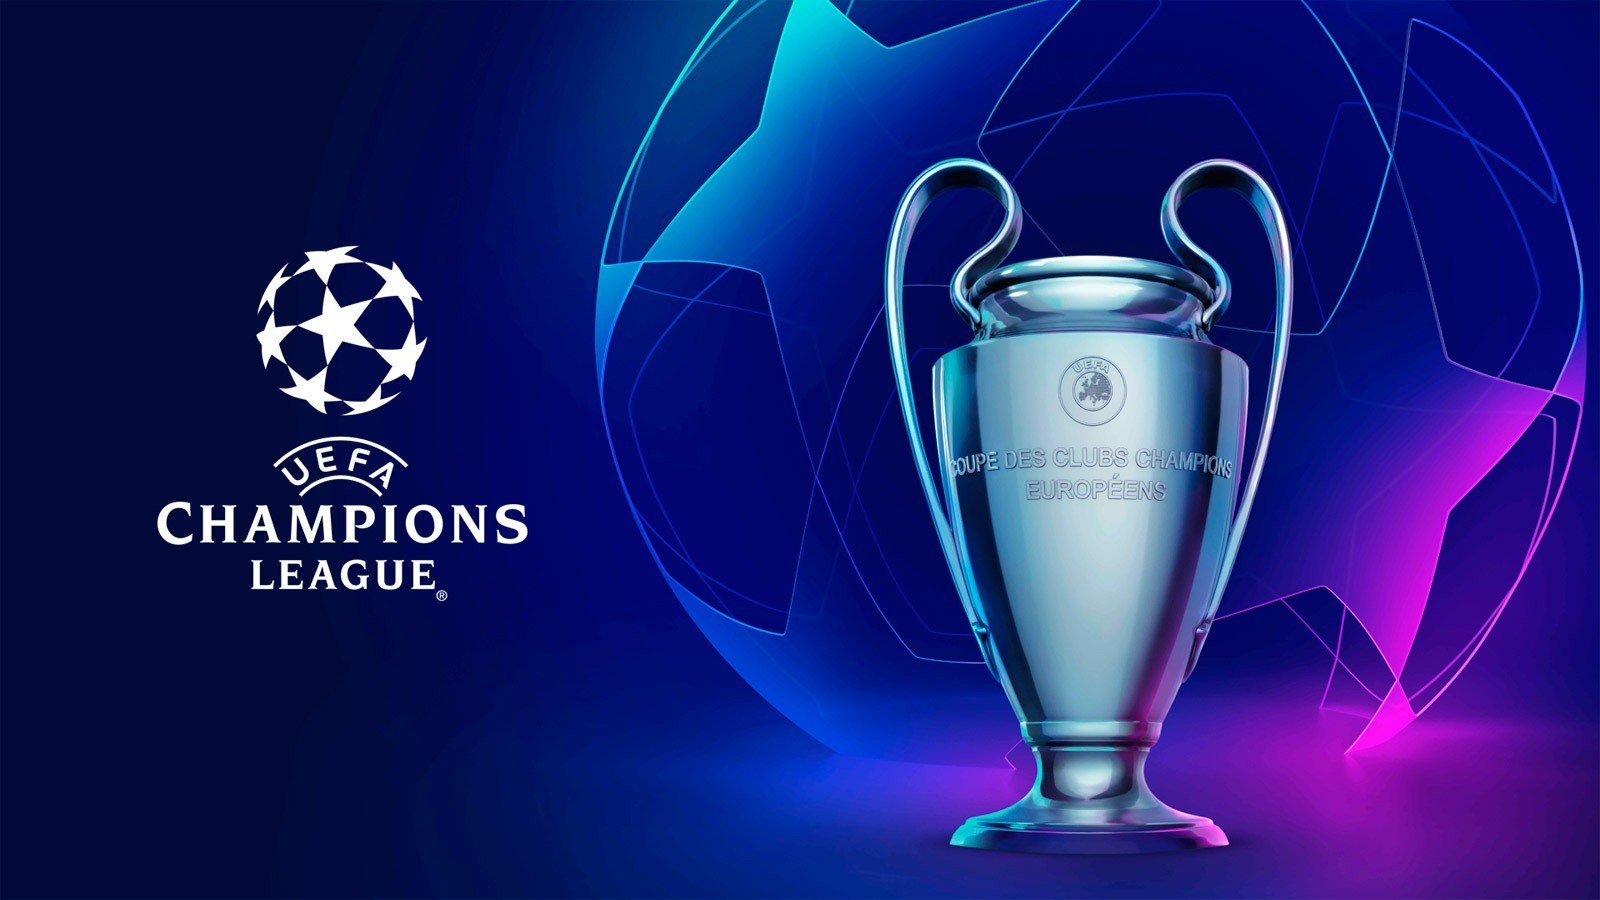 موعد مباريات الجولة السادسة من دوري أبطال أوروبا 2020 والقنوات الناقلة